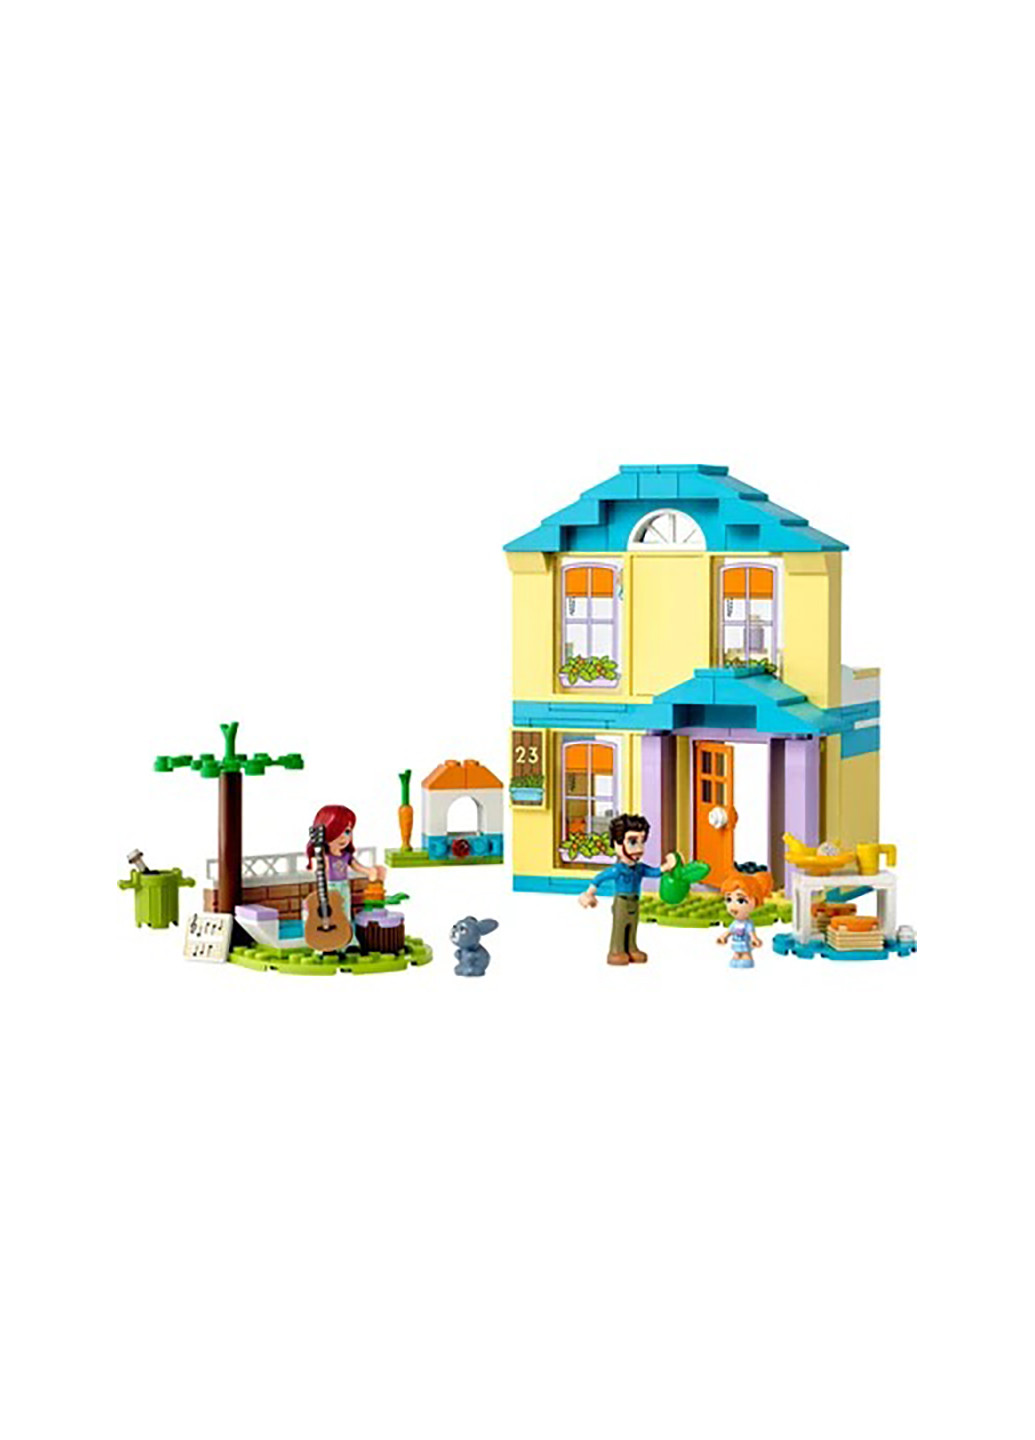 Конструктор Friends Дом Пейсли 41724 Lego (257877666)